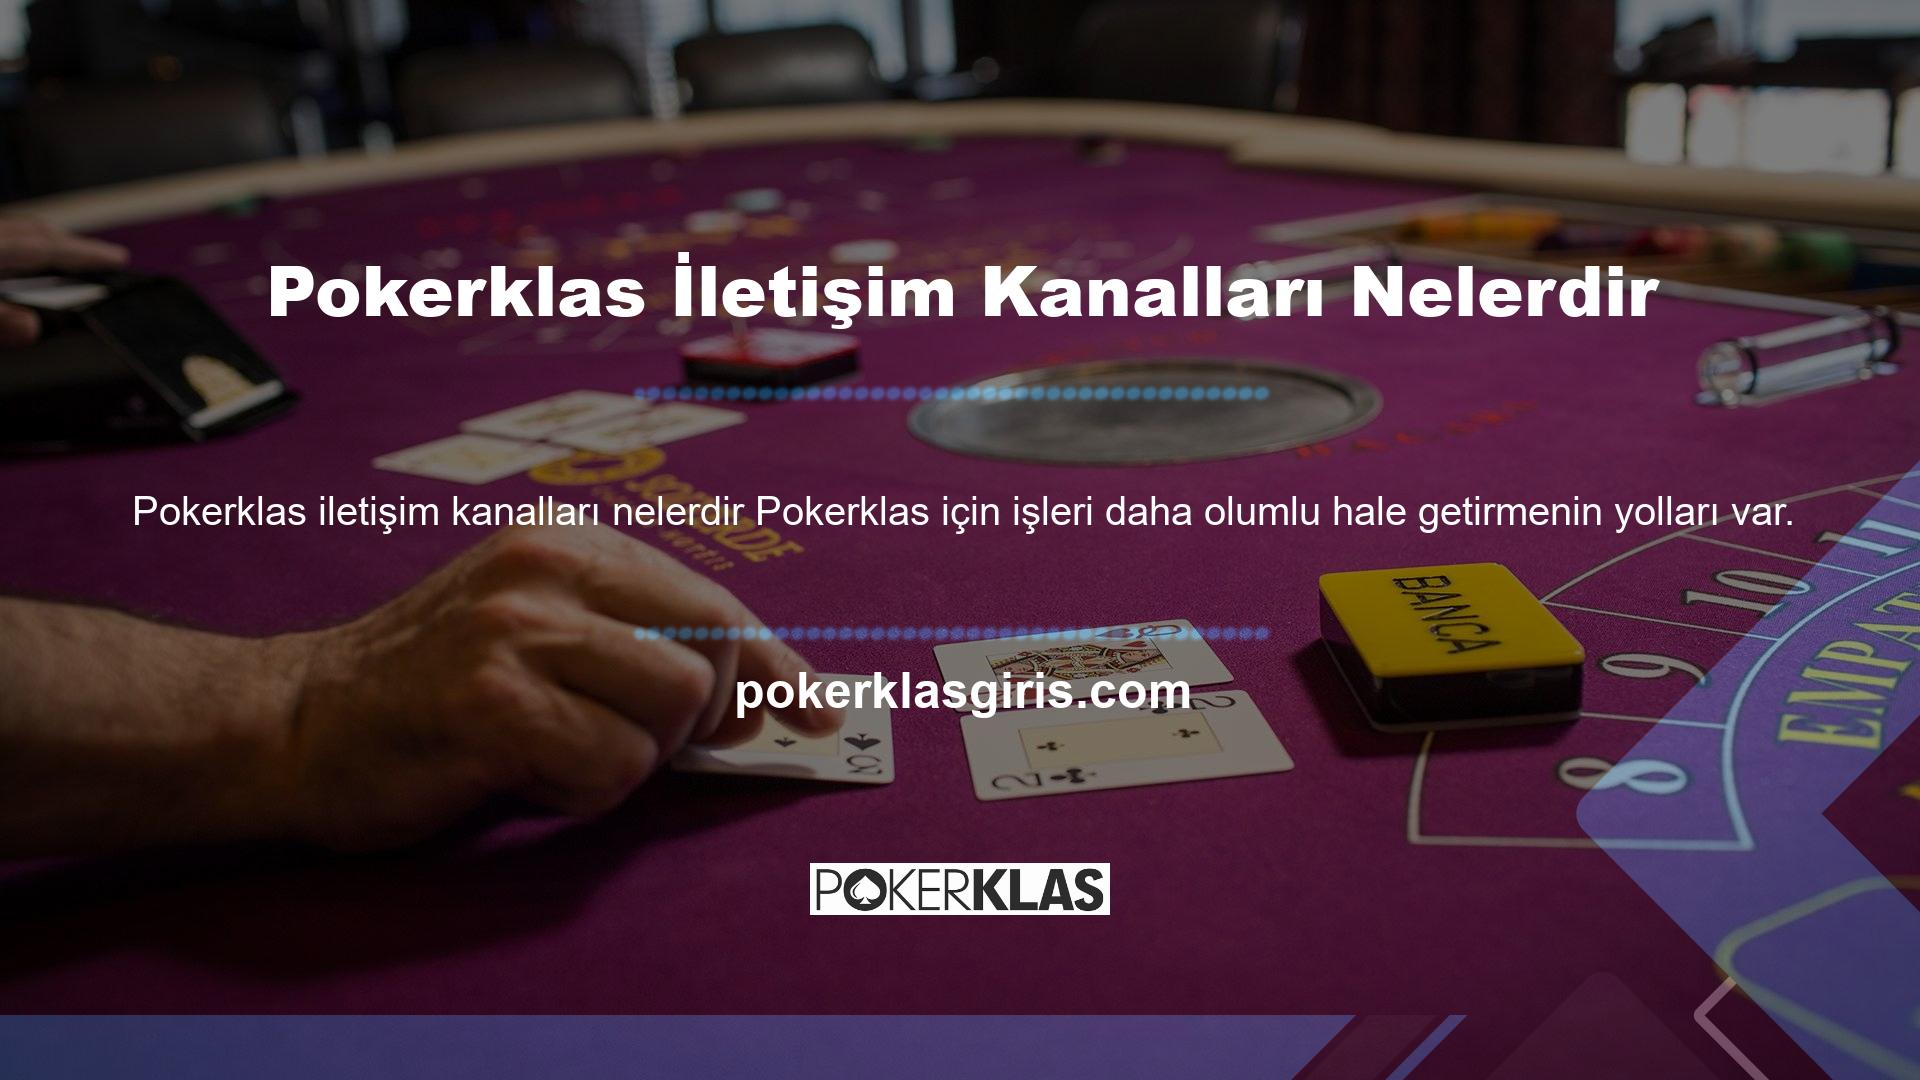 Piyasadaki sanal casino sitelerinin aksine Pokerklas, üyeleri ile doğrudan iletişim kurarak sorunlara çözüm bulmaya çalışır